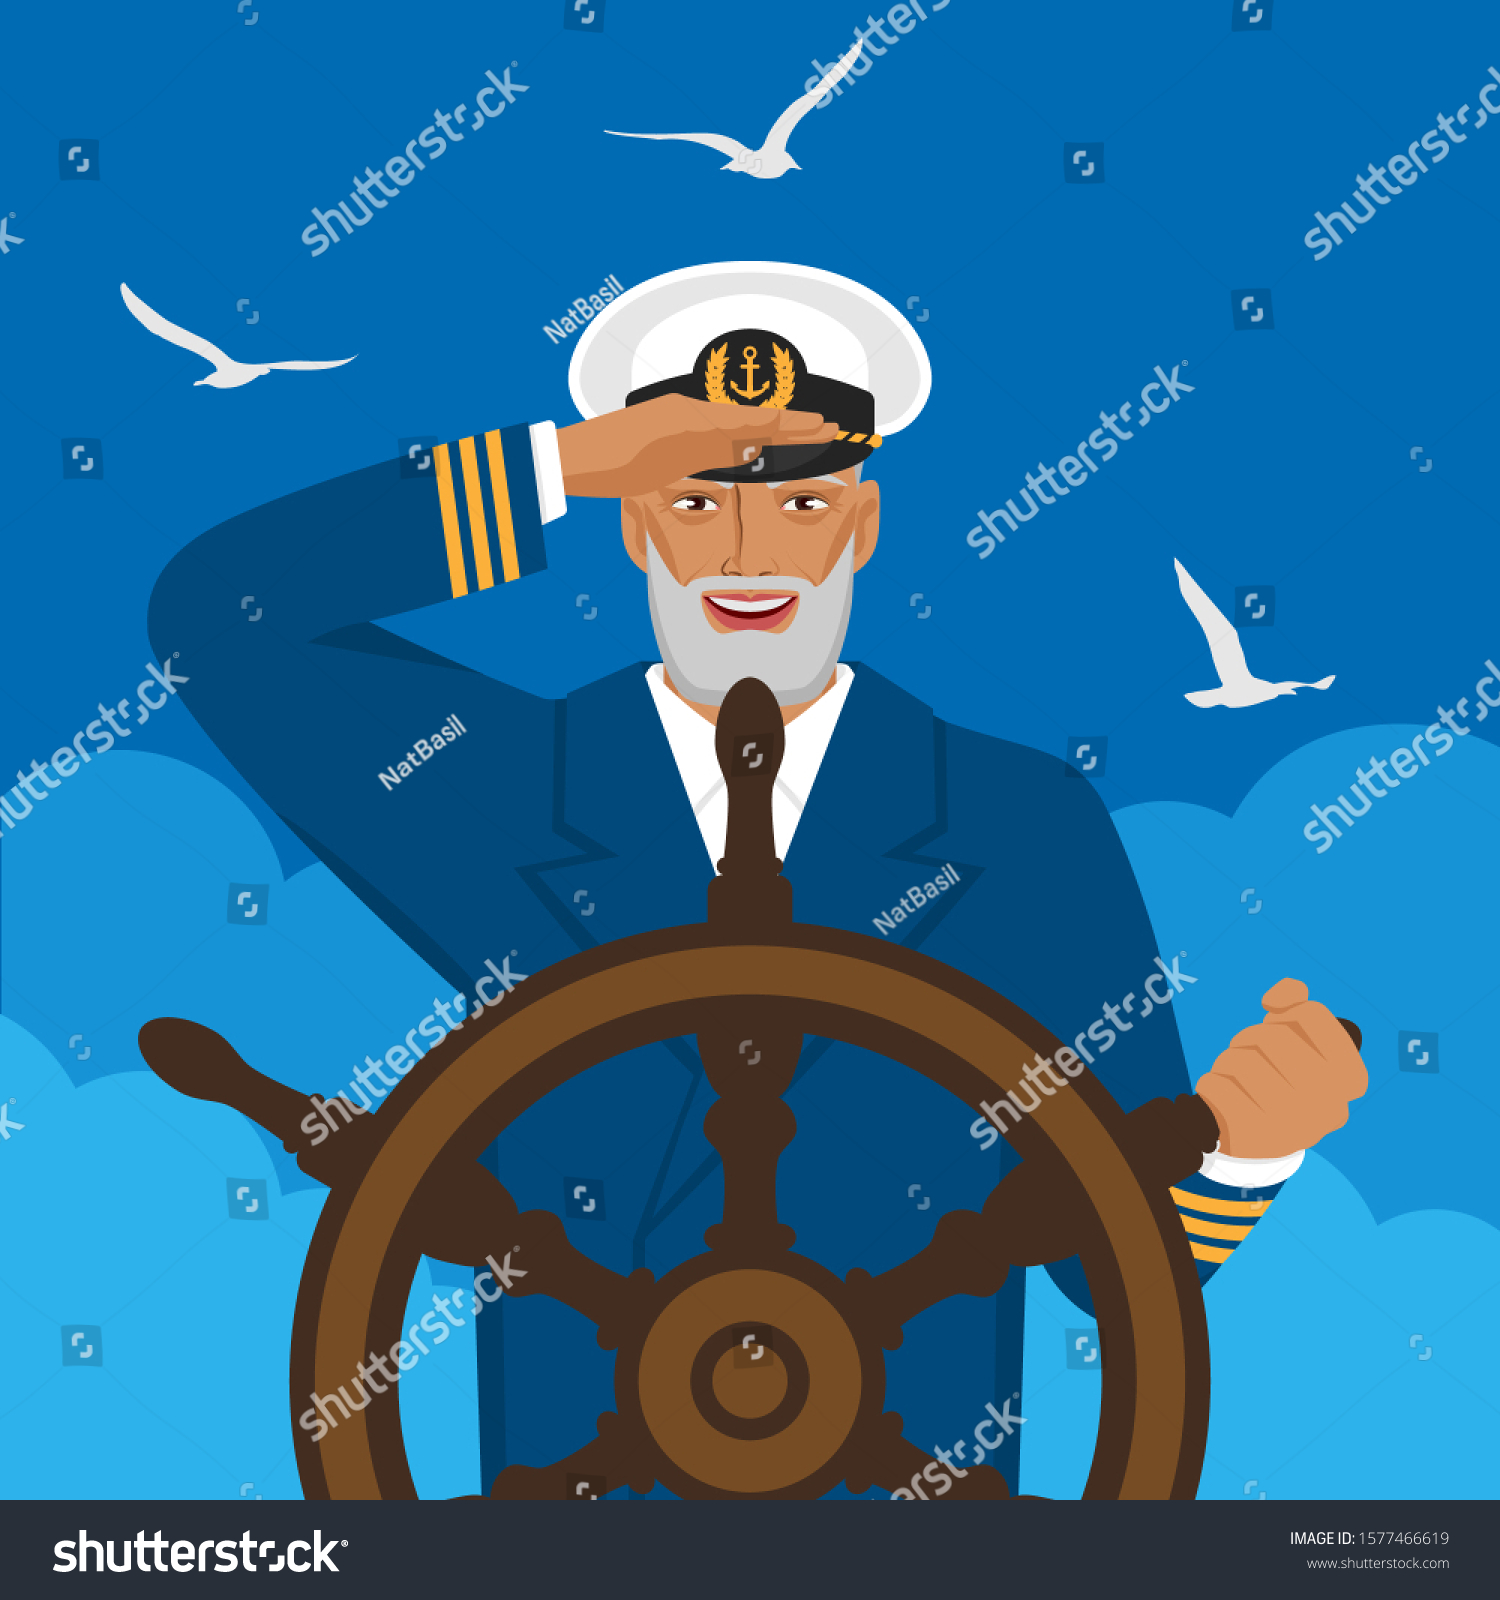 На корабля стоит капитан. Капитан корабля у штурвала. Капитан с биноклем. Моряк с биноклем. Капитан на мостике.